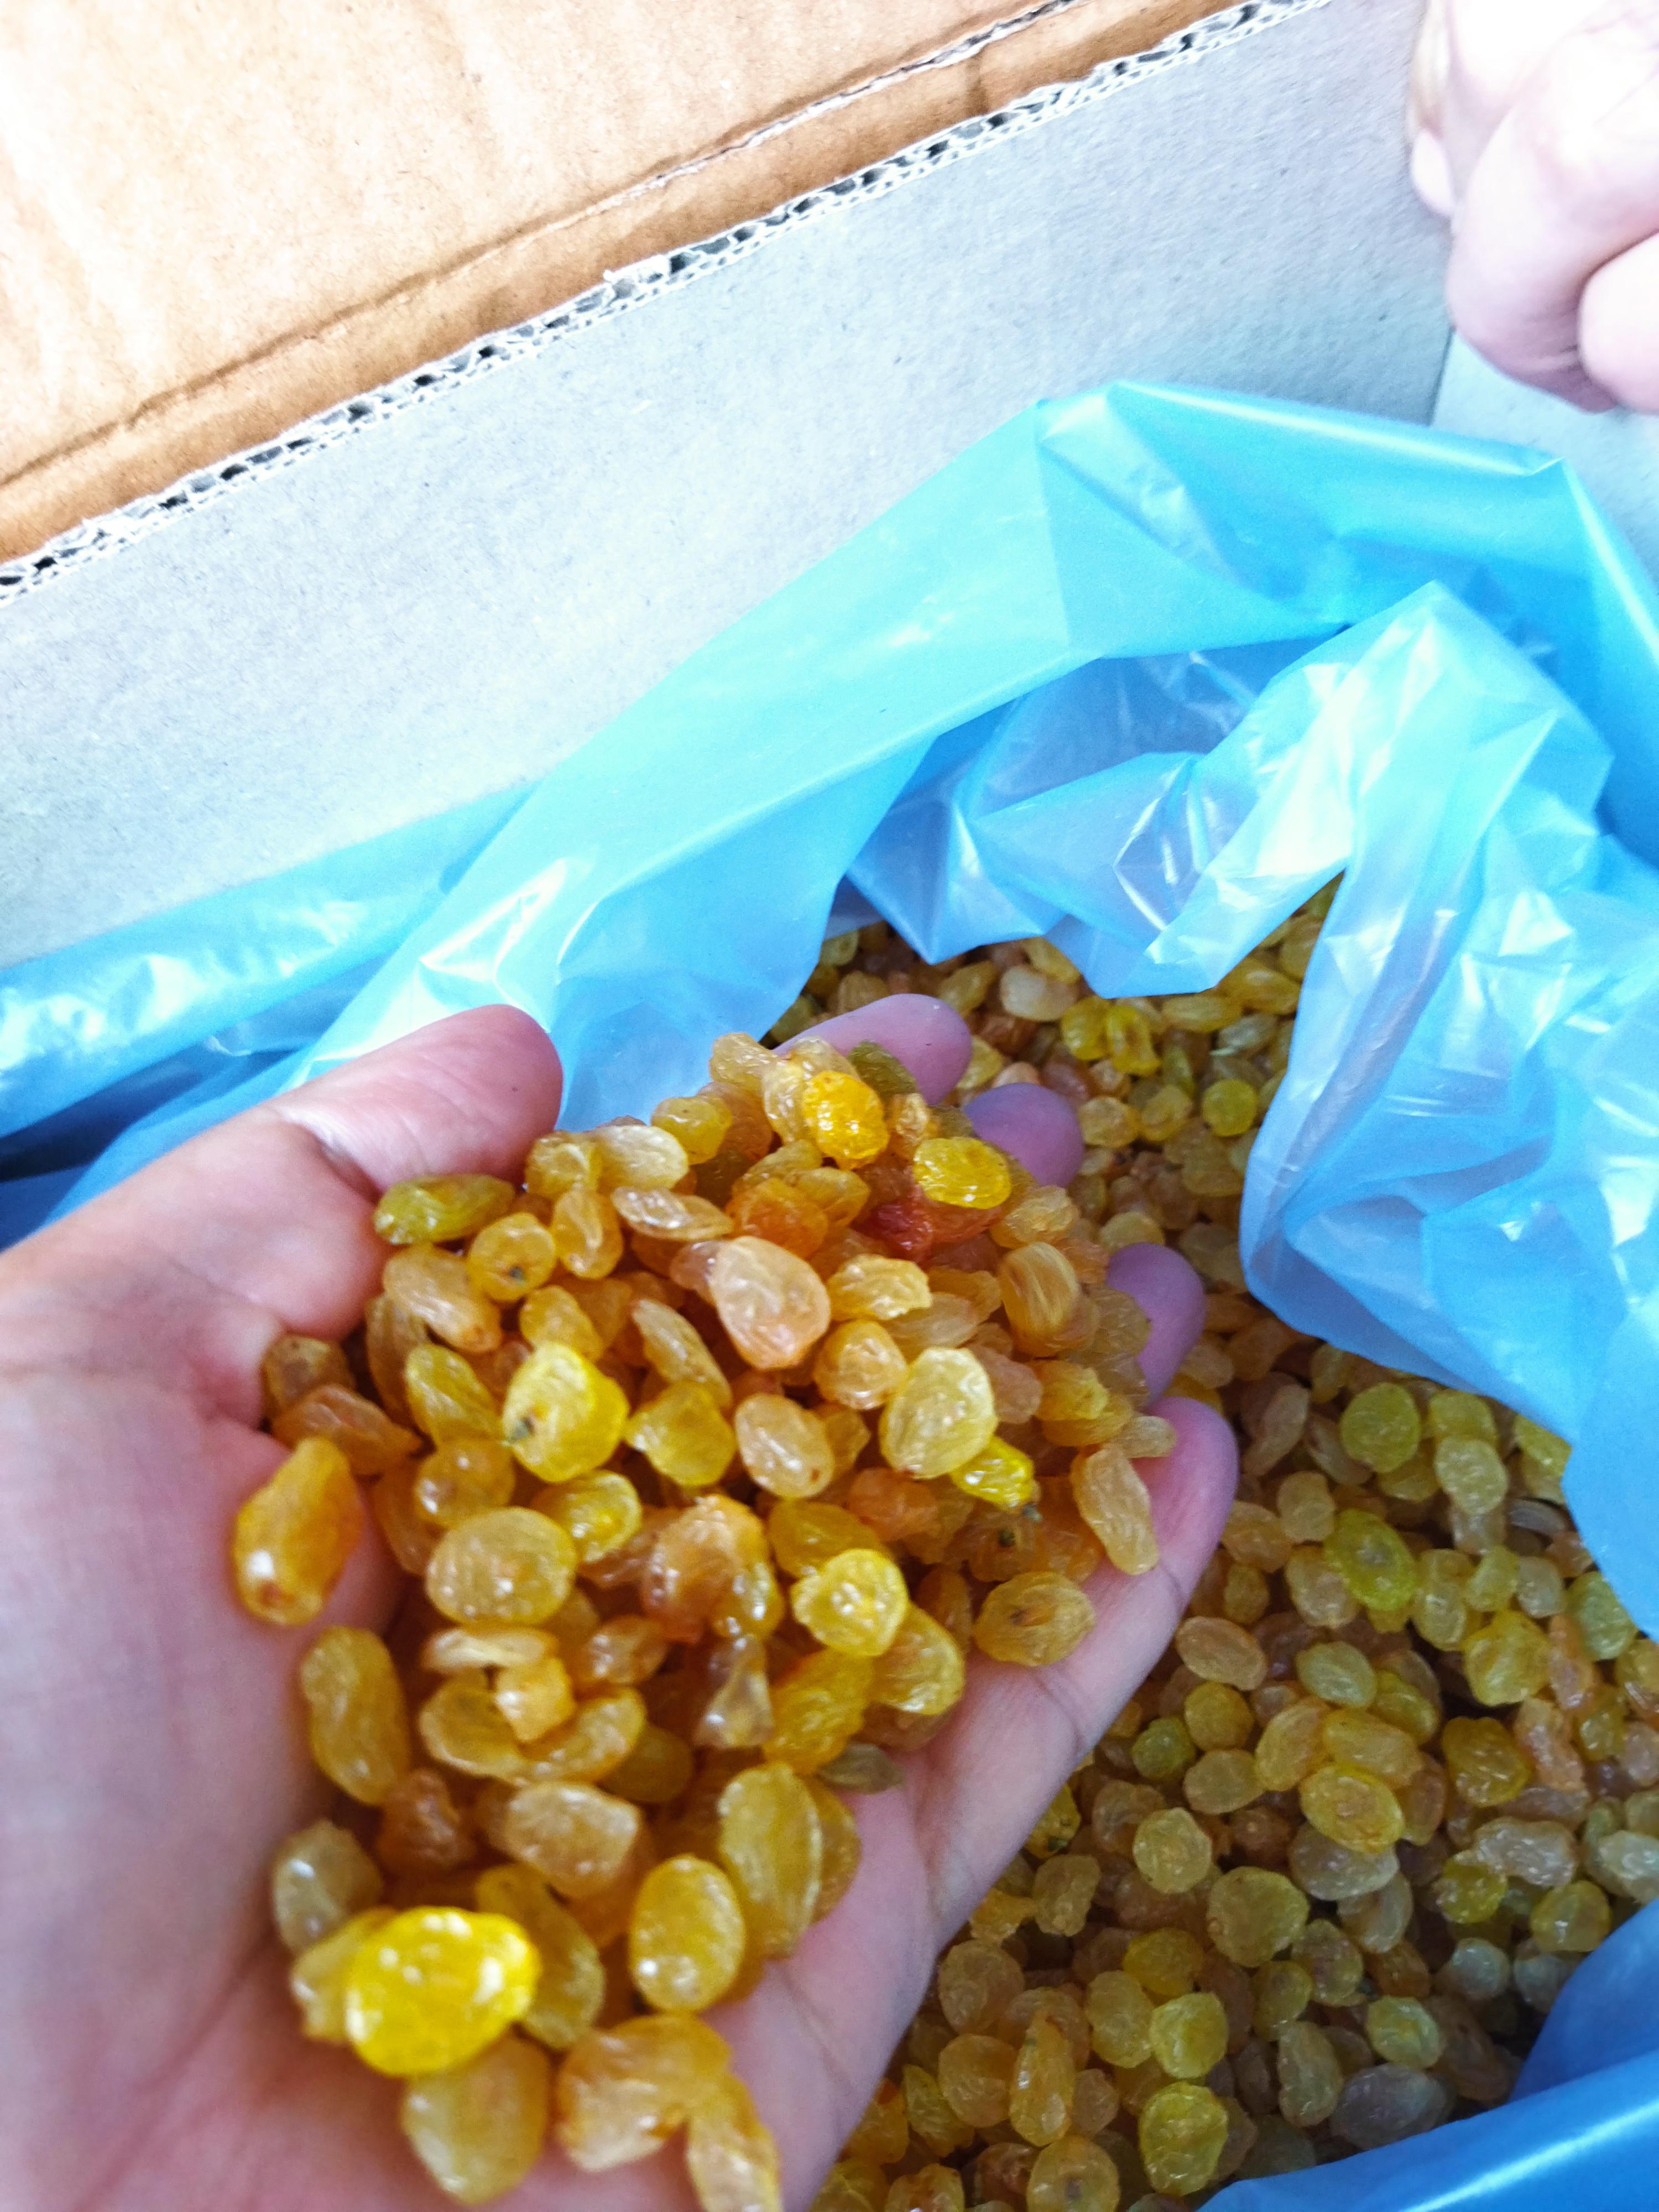 Kuru Üzüm - Anvar Şaripov tarafından verilen satılık altın sultani çeşidi kuru üzüm  ilanını ve diğer satılık kuru üzüm ilanlarını tarimziraat.com adresinde bulabilirsiniz